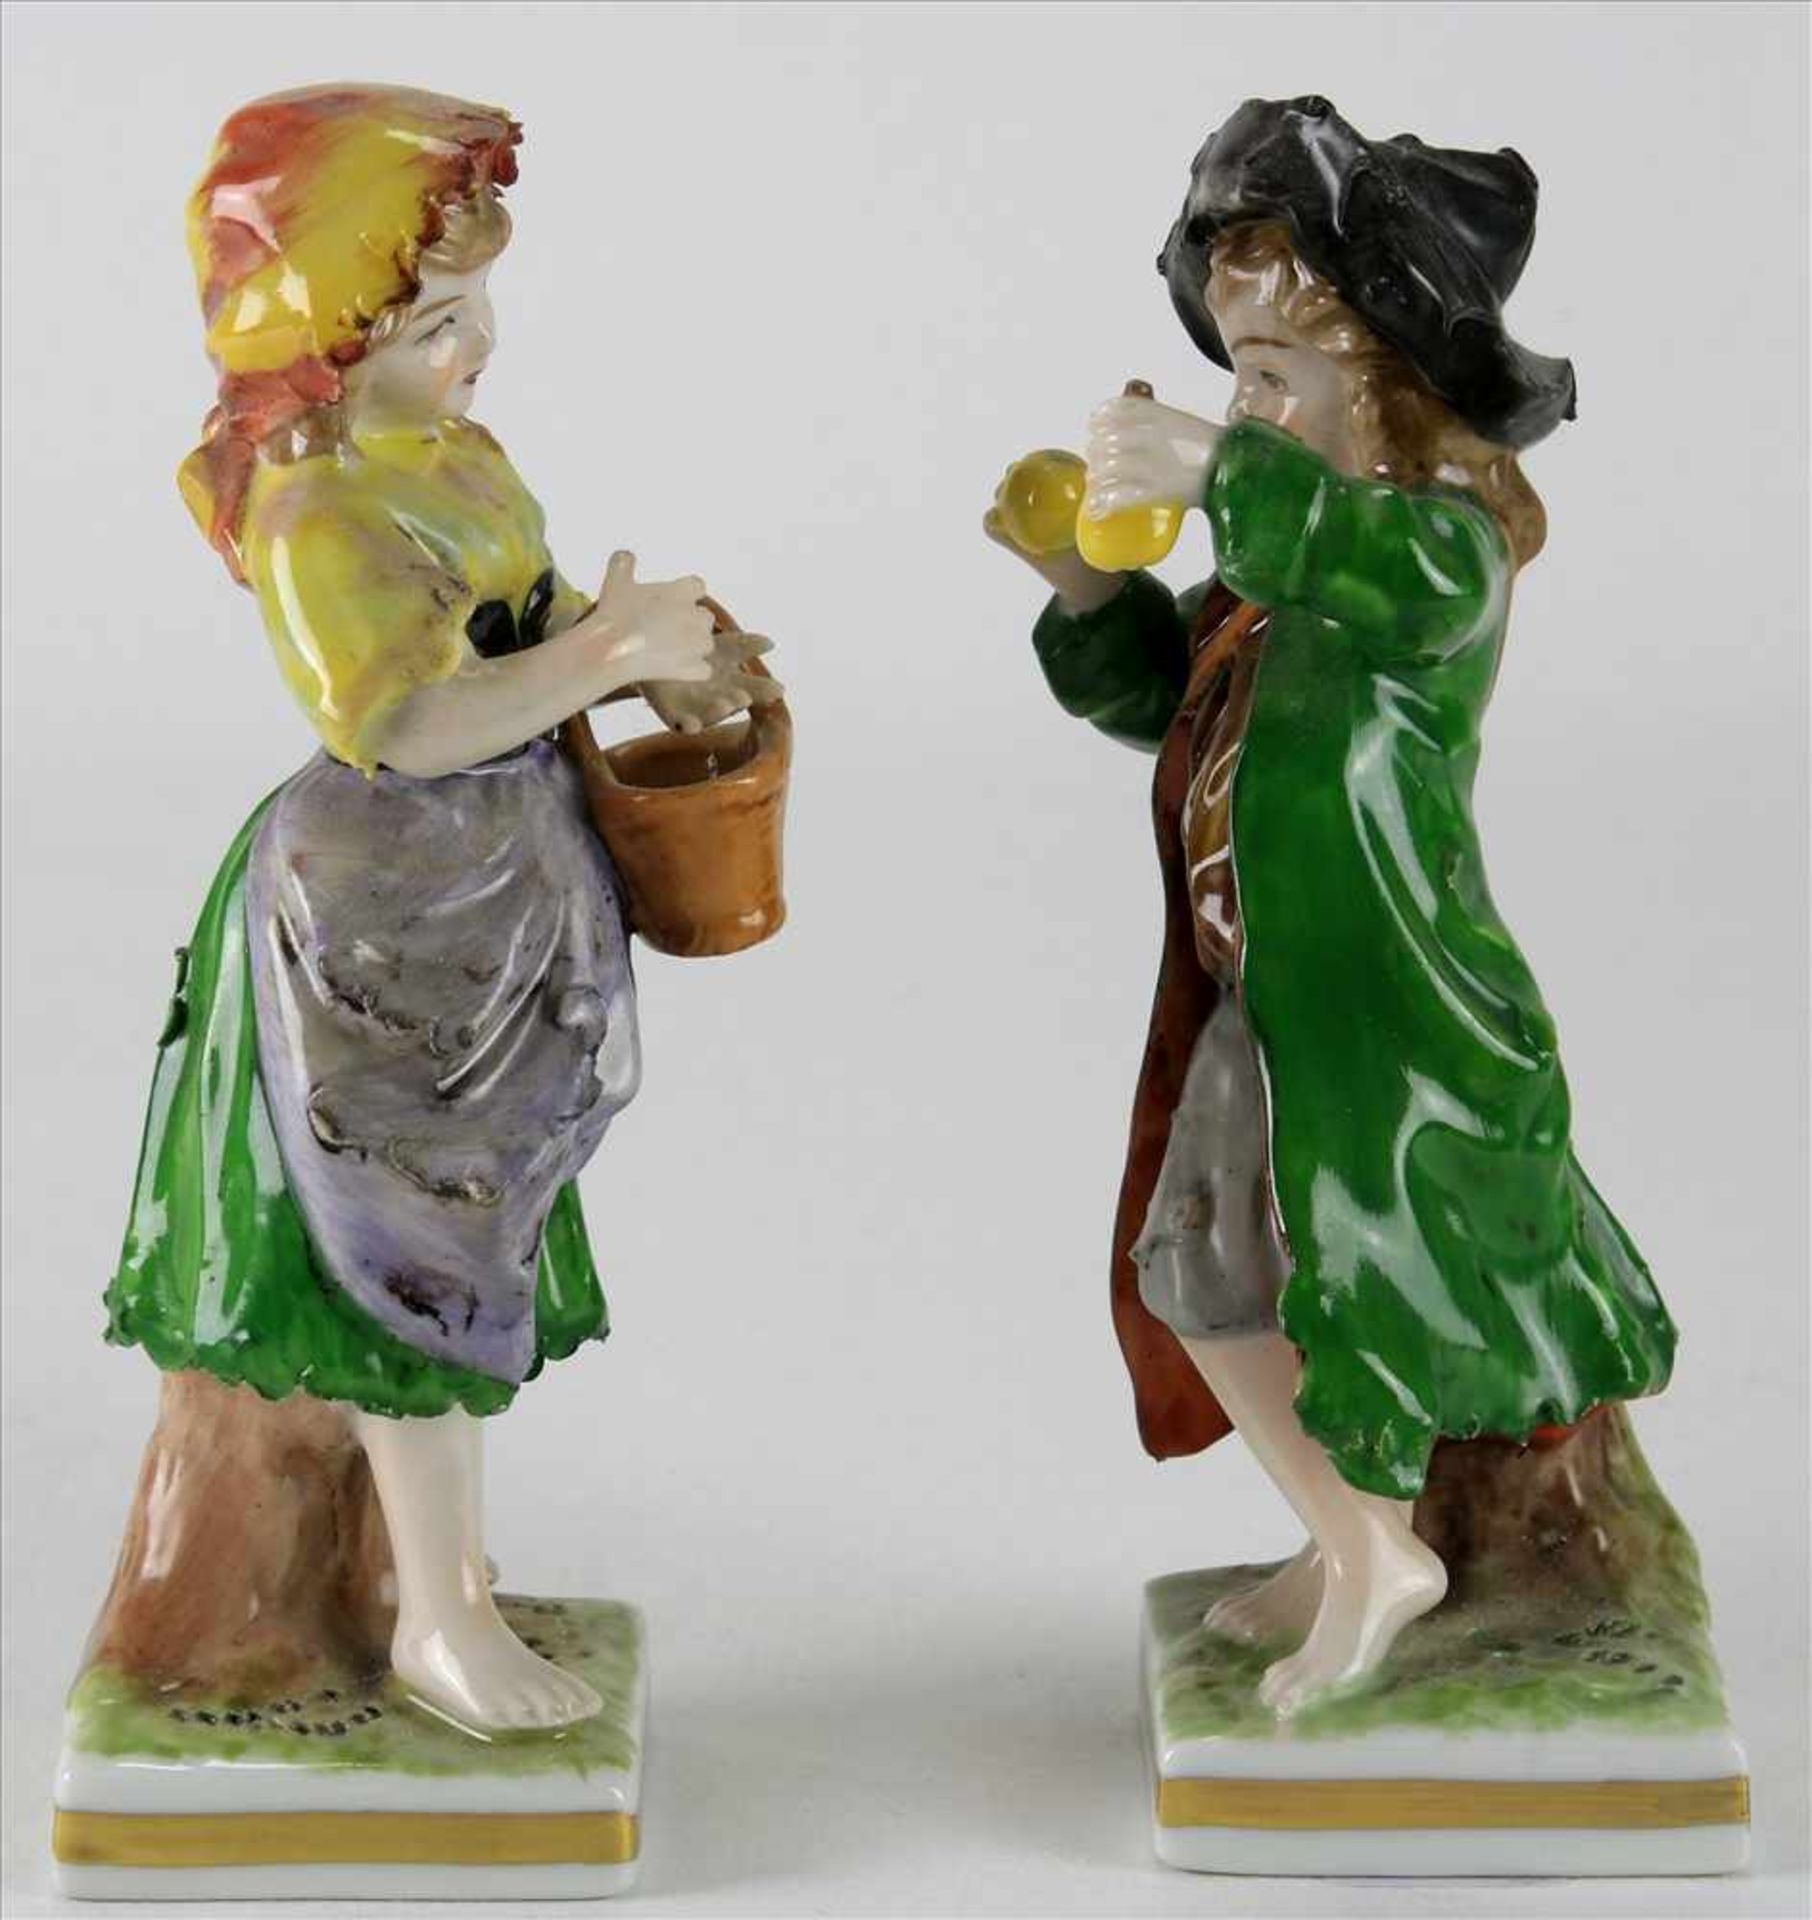 Paar PorzellanfigurenRudolstadt um 1900. Junge mit Äpfeln und Mädchen mit Korb. Polychrome Staffage. - Bild 3 aus 5